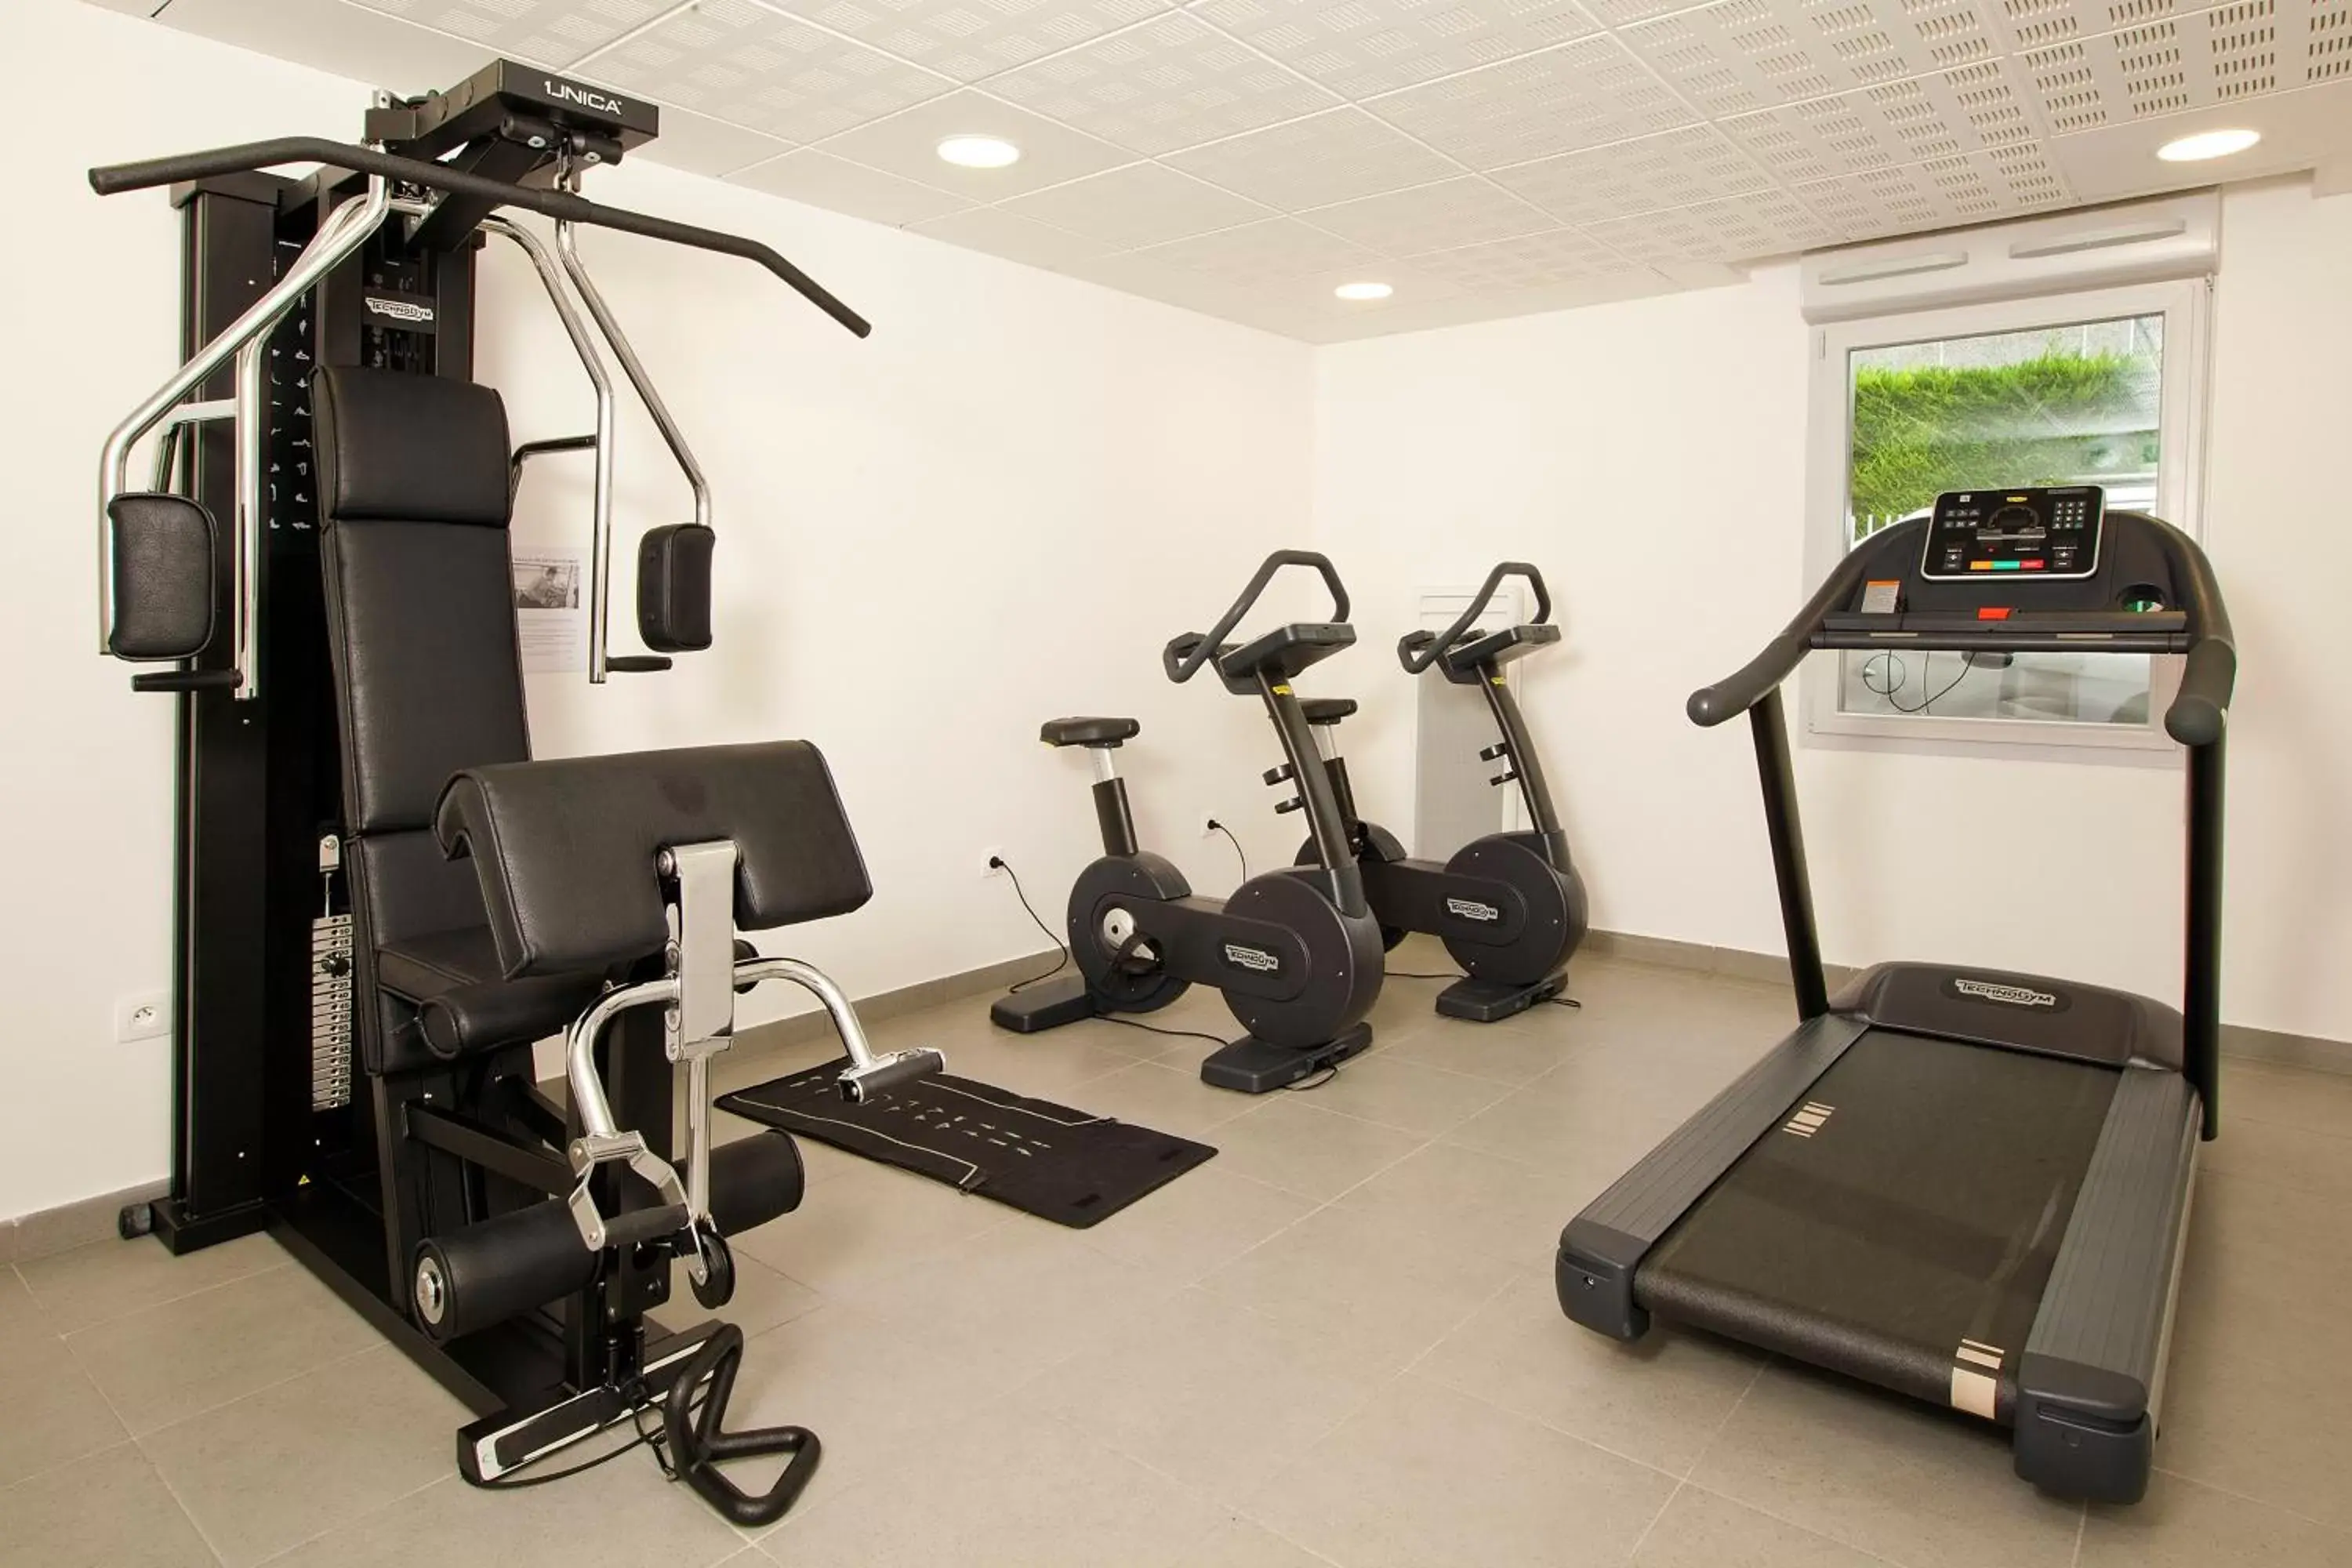 Fitness centre/facilities, Fitness Center/Facilities in Séjours & Affaires Paris Bagneux